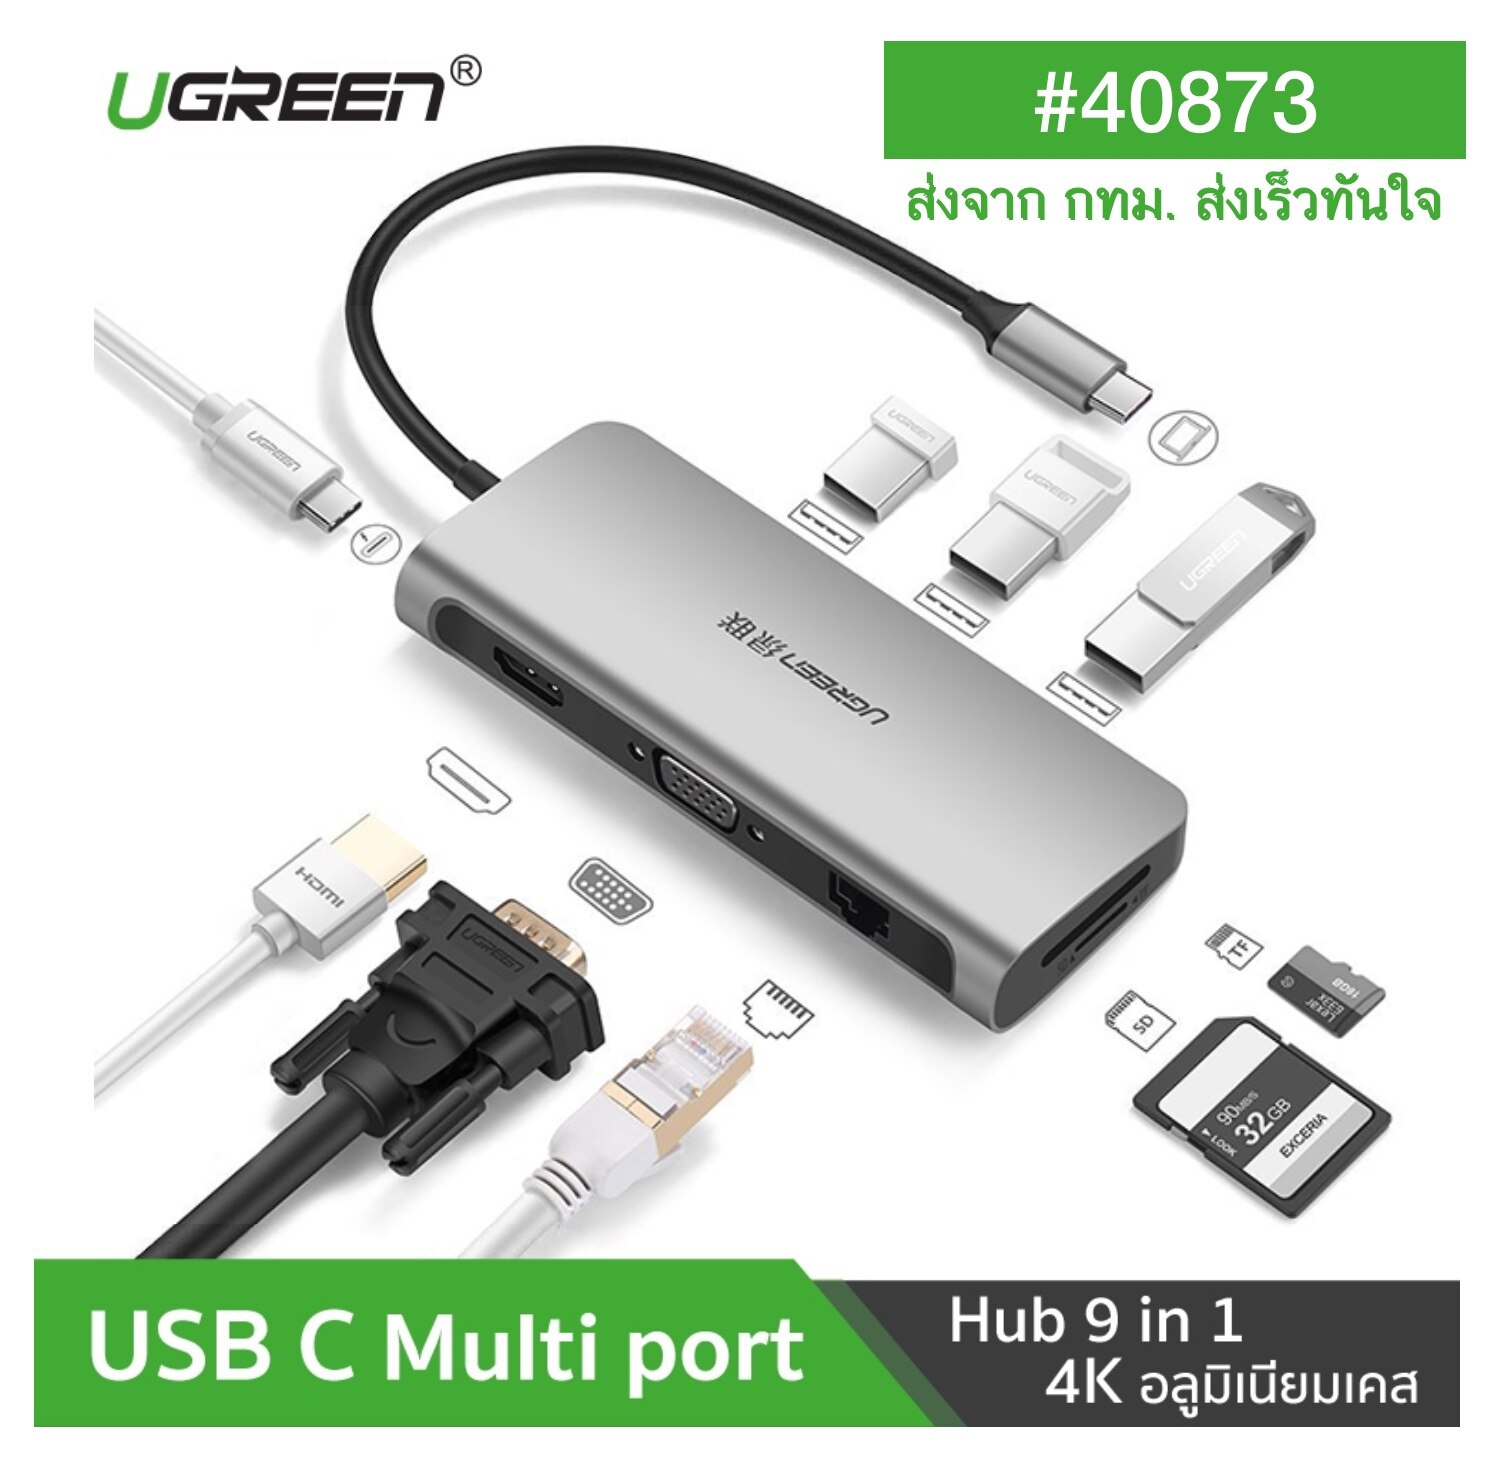 ของแท้ ส่งเร็ว จาก กทม UGREEN 40873 USB C USB3.1 ตัวแปลง TYPE C Hub 9 in 1 ไปเป็น HDMI 4K, VGA 1080P, Card Reader SD/TF, Lan Gigabit 1000Mbps, USB 3.0 Hub 3 ช่อง รุ่น 40873